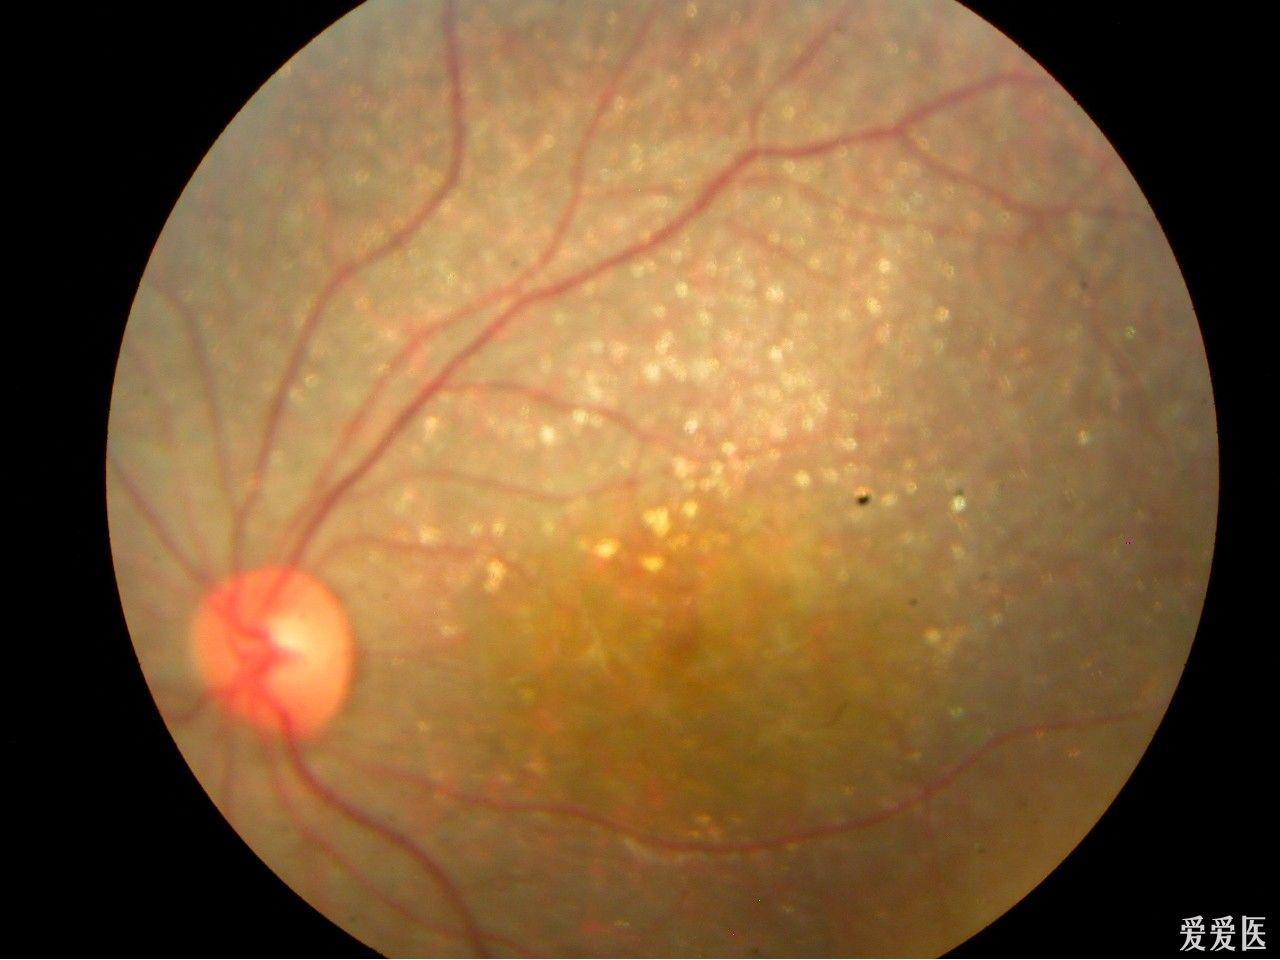 视网膜病变的症状图片图片